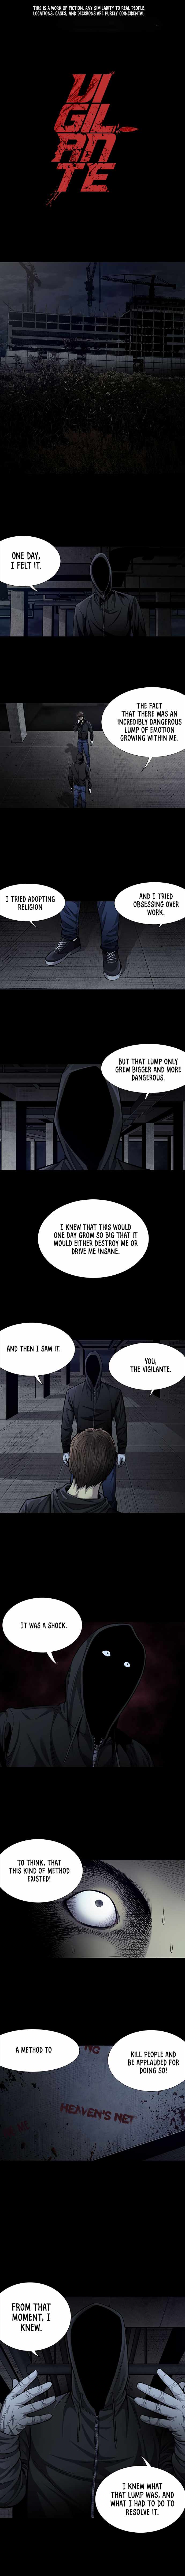 Vigilante (Crg) - Page 1